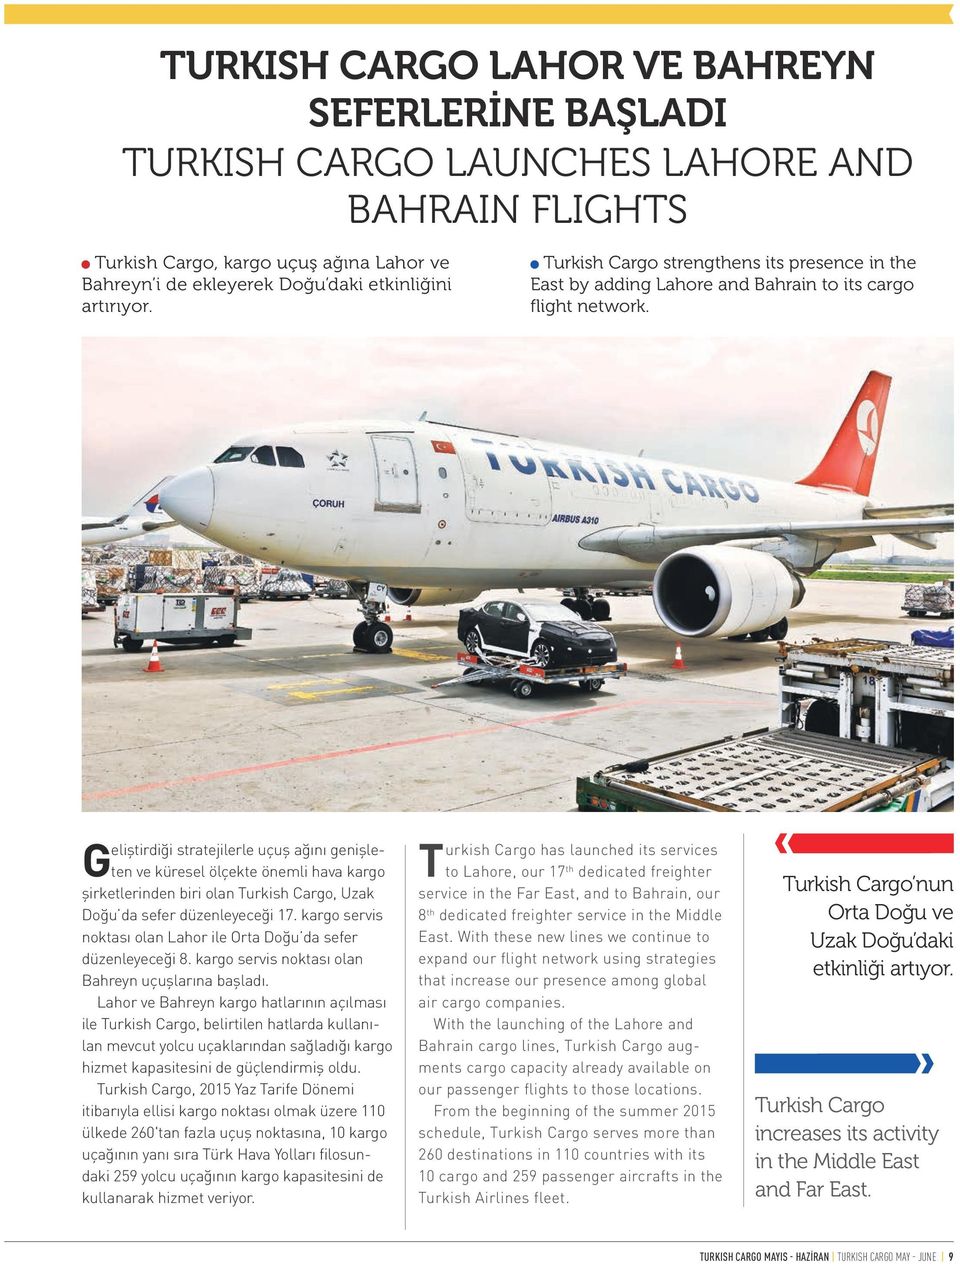 Geliştirdiği stratejilerle uçuş ağını genişleten ve küresel ölçekte önemli hava kargo şirketlerinden biri olan Turkish Cargo, Uzak Doğu da sefer düzenleyeceği 17.